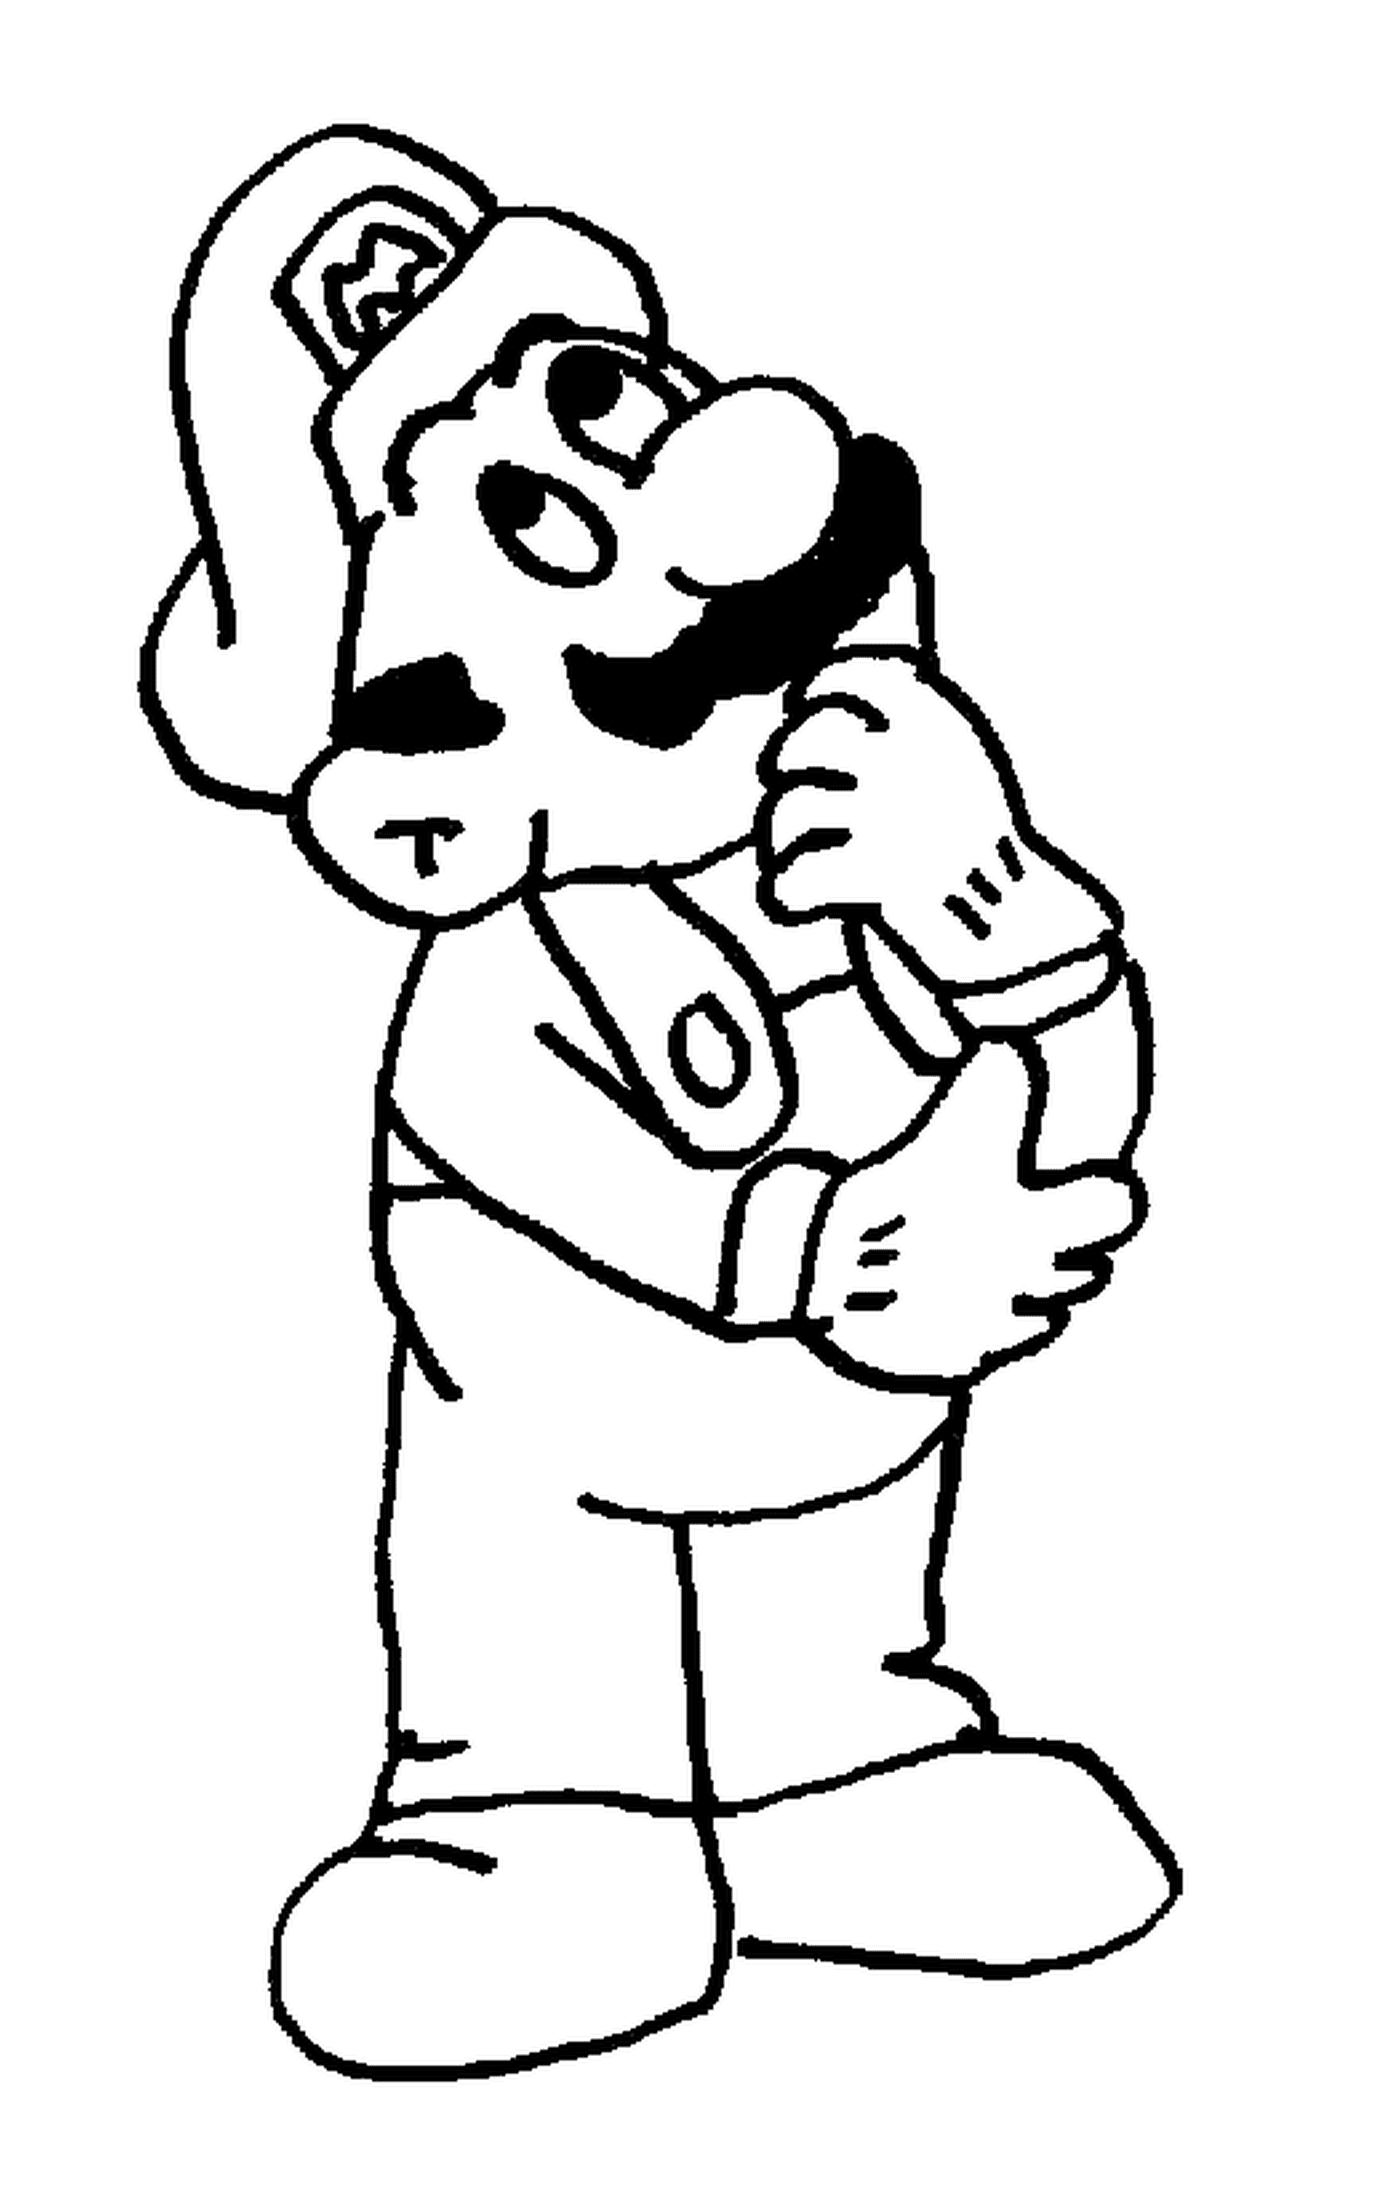  Марио, придирчивый человек с усами 